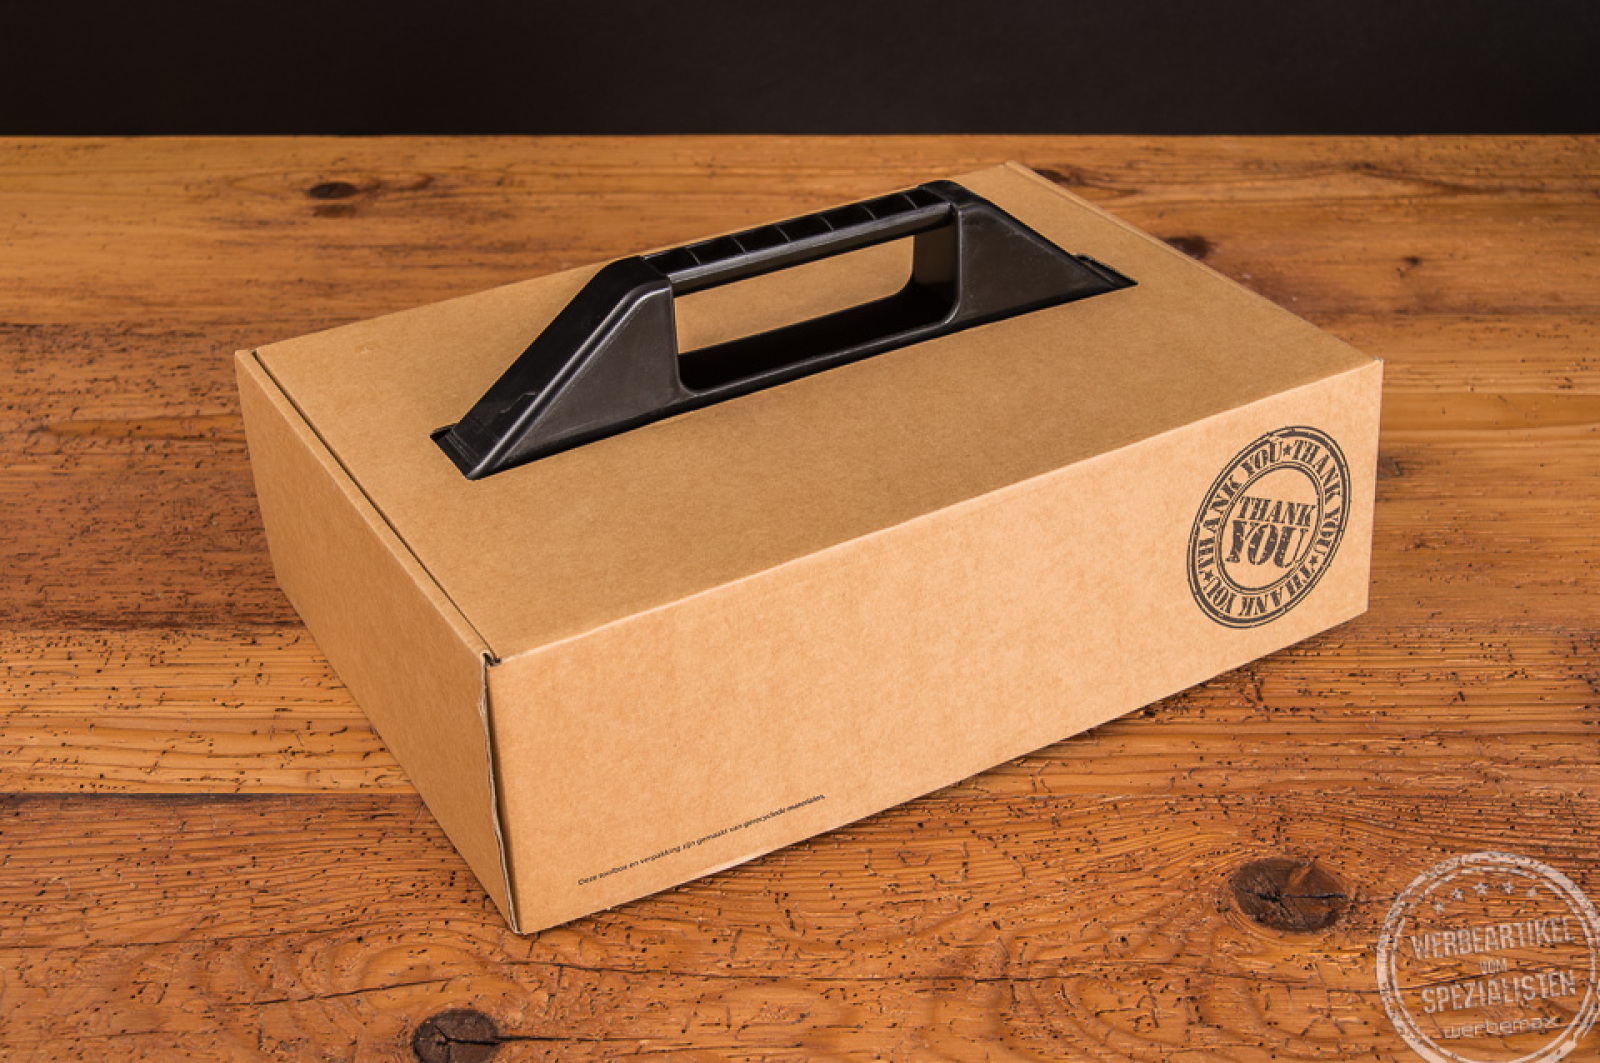 Toolbox Werkzeugbox als Werbeartikel mit Logodruck auf Verpackung